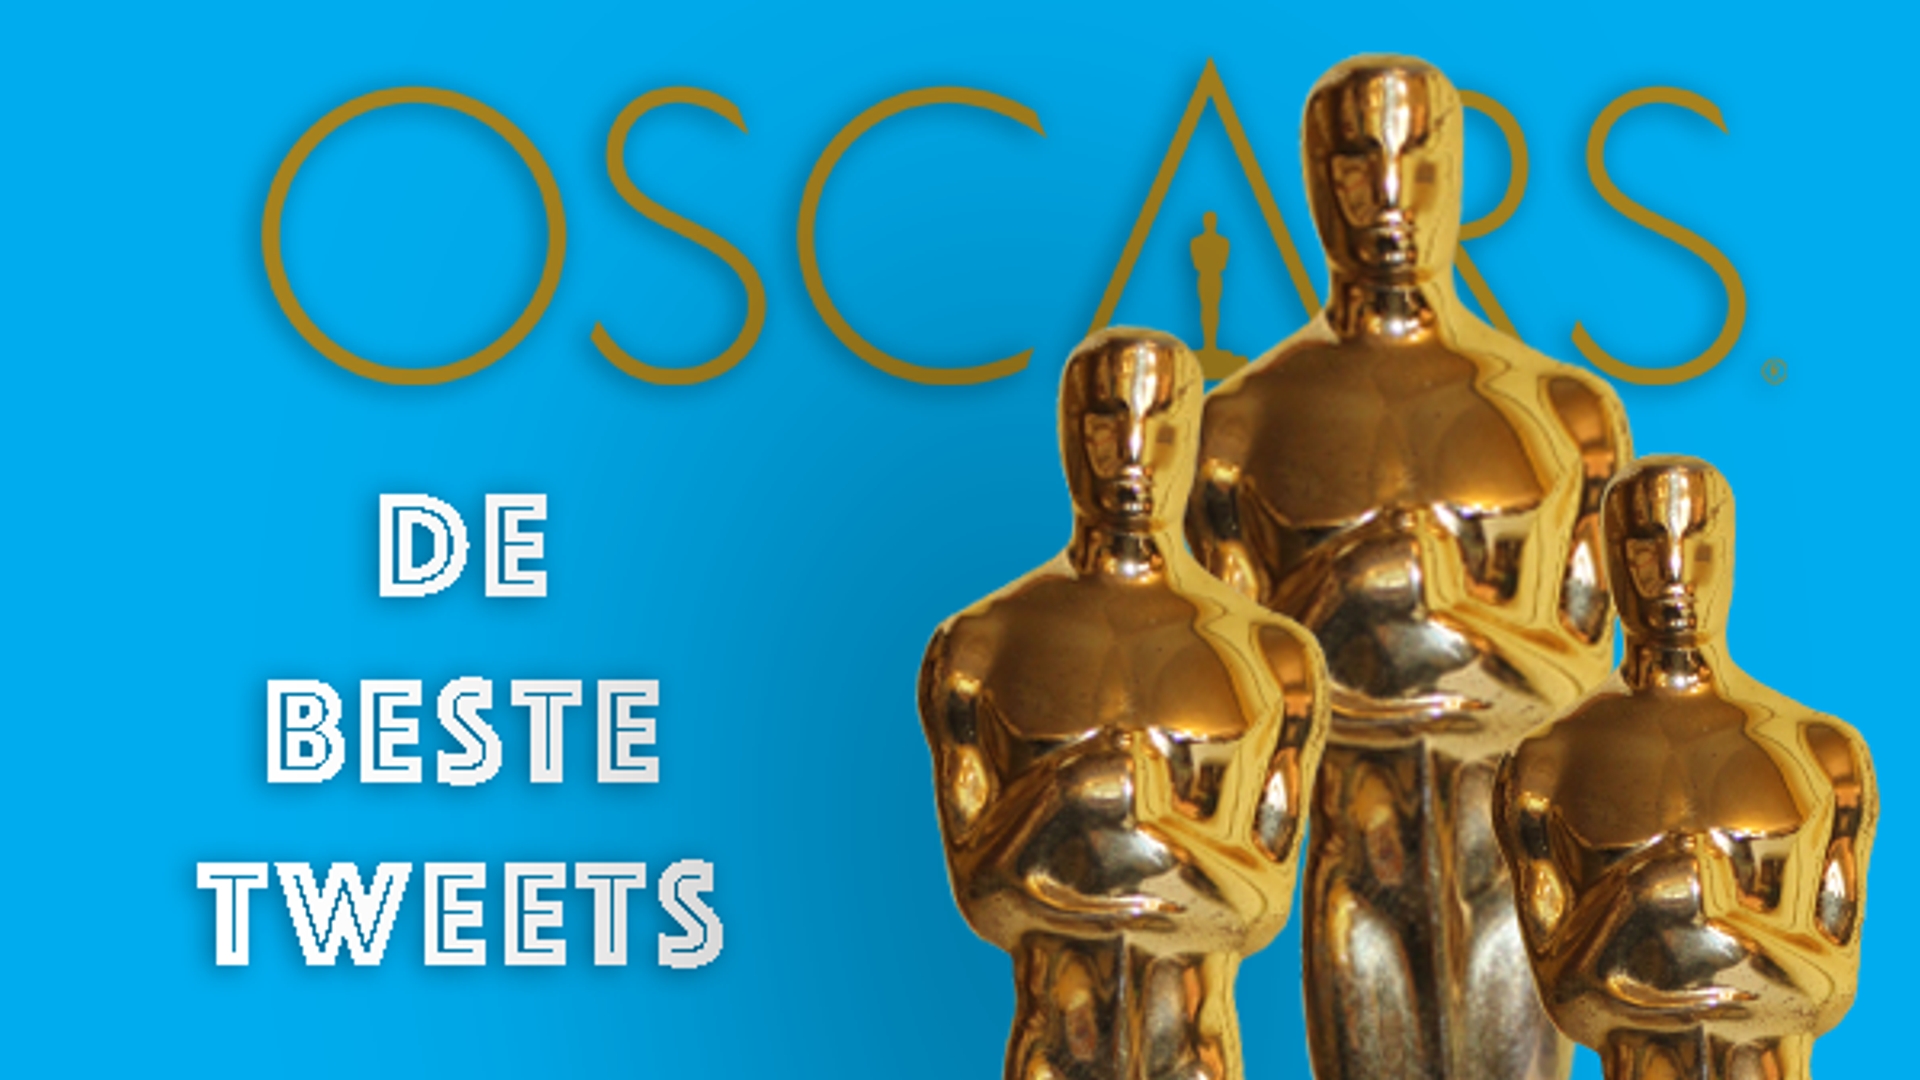 De Beste Tweets over de Oscars